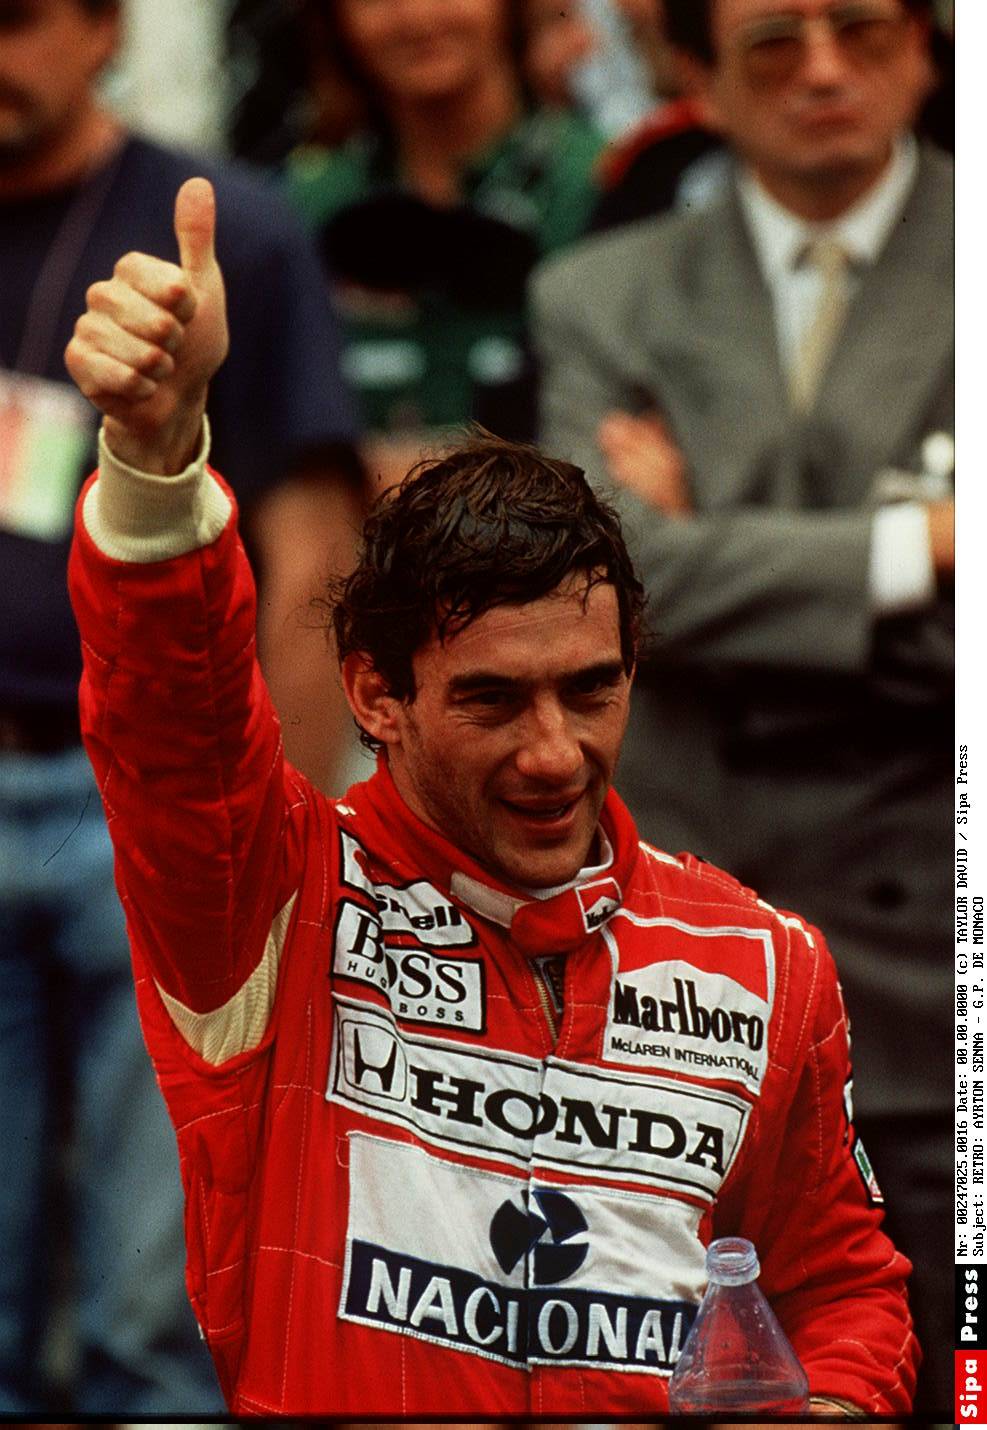 Ayrton Senna, la rivelazione della ex:  "Disse: sento che non vivrò a lungo"